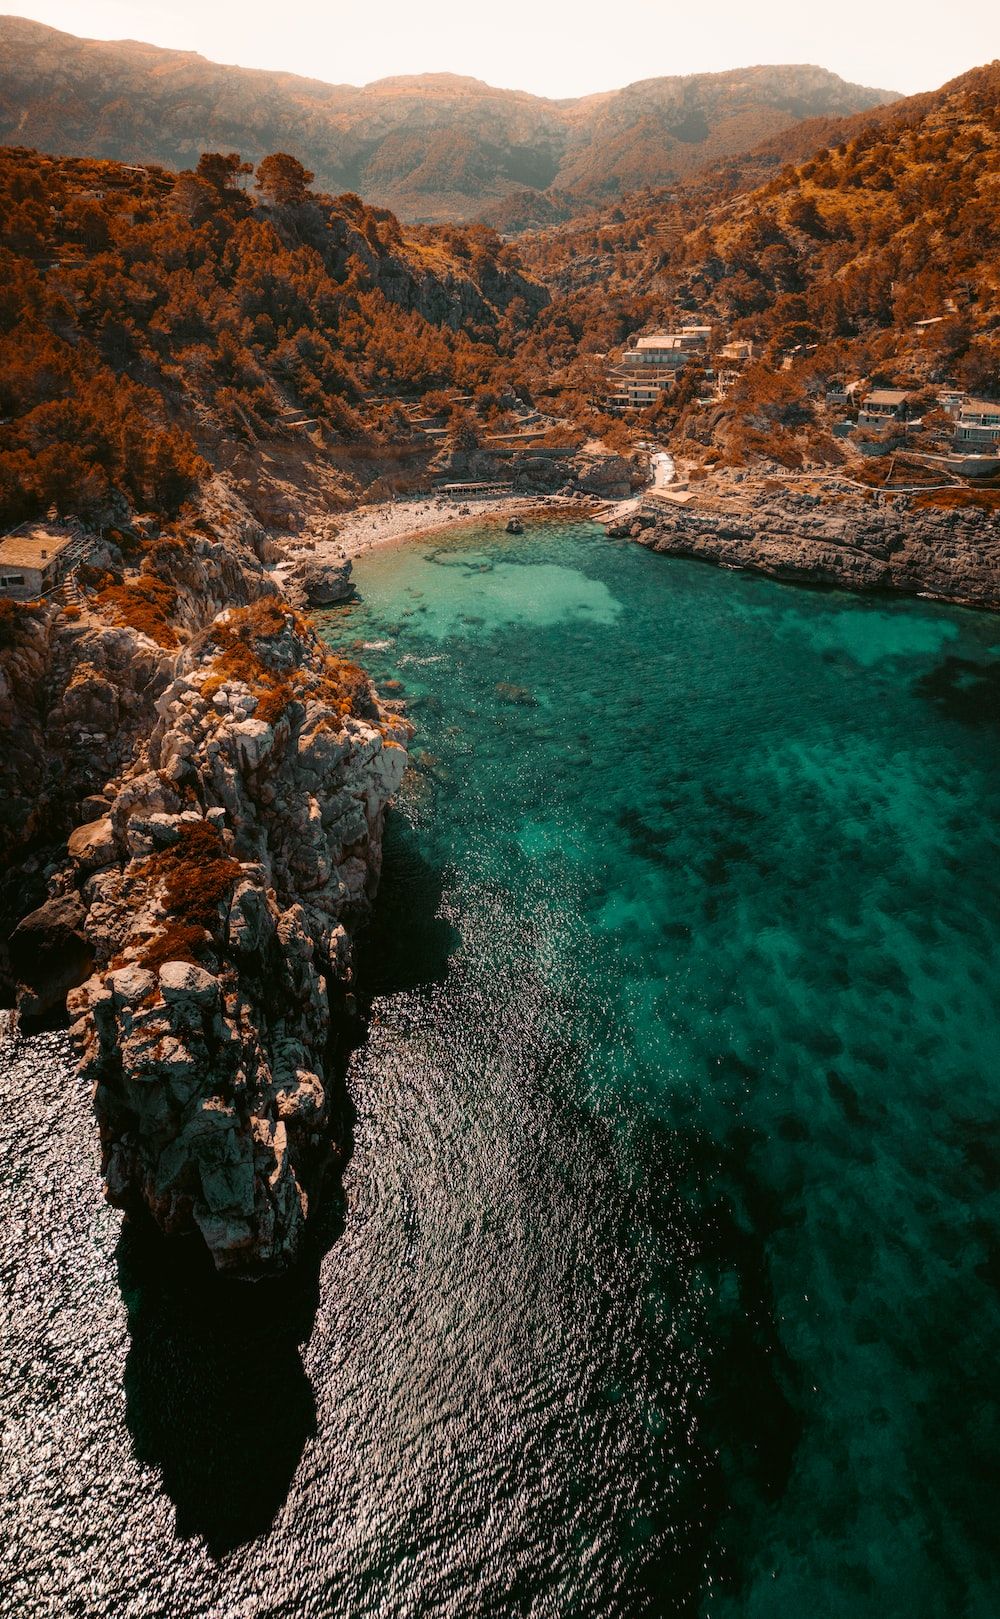  Mallorca Hintergrundbild 1000x1619. Mallorca Picture. Download Free Image